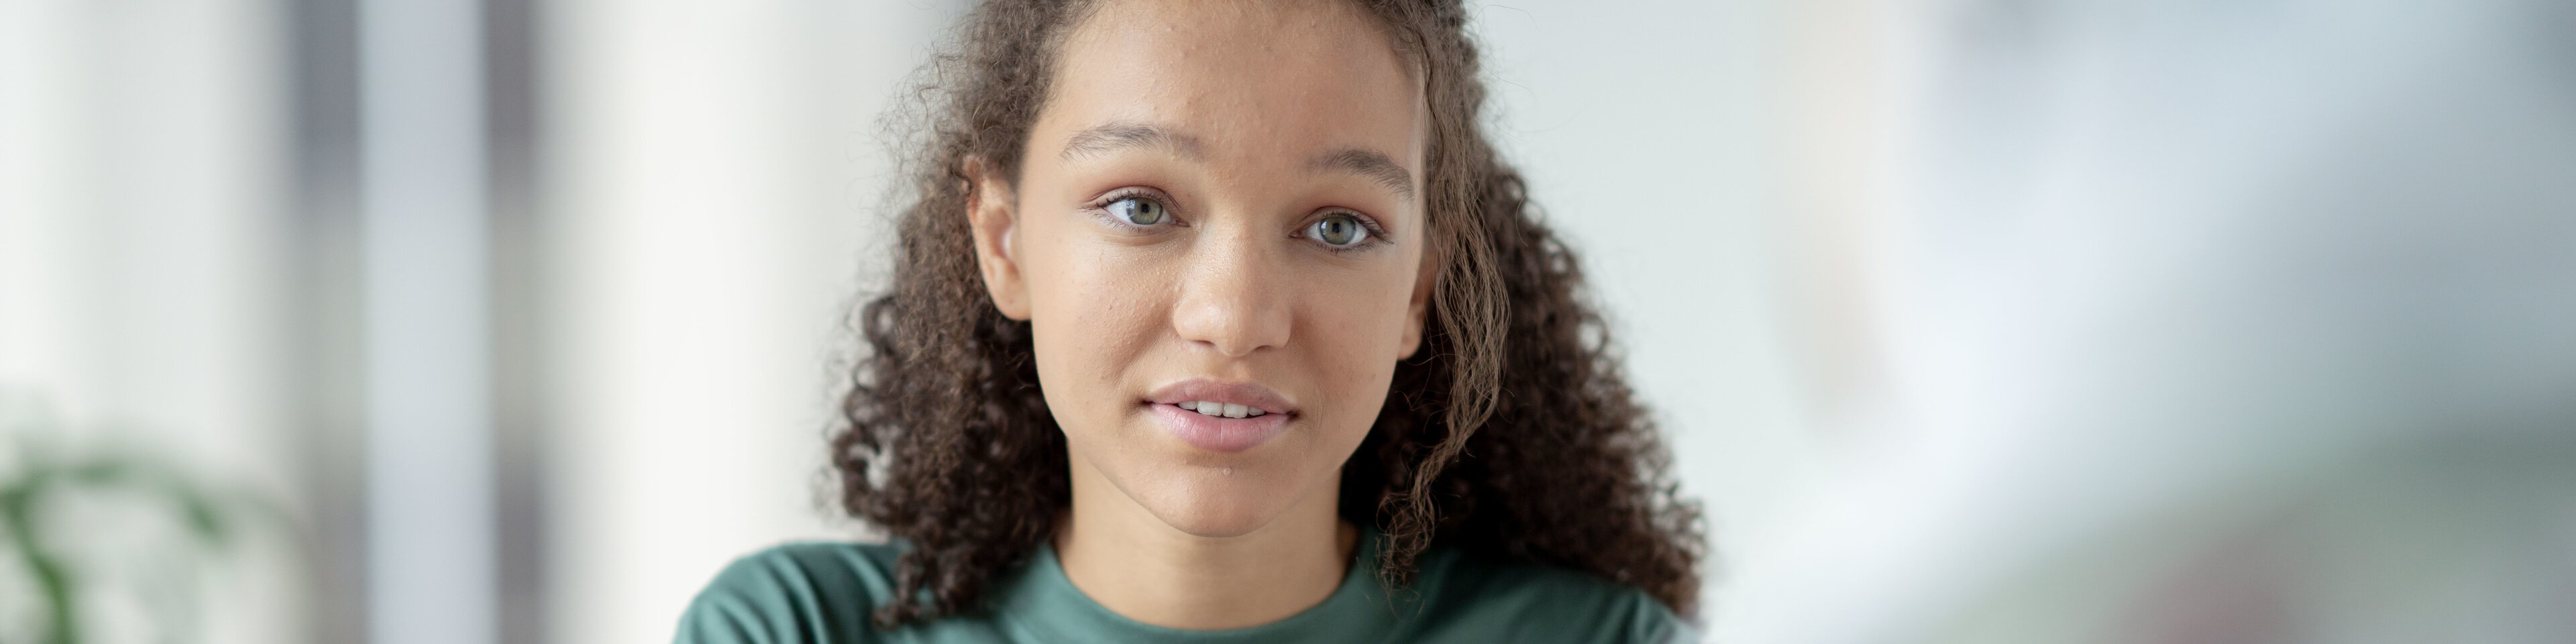 Jugendliches Mädchen mit braunen lockigen Haaren und grünen Augen sitzt an einem Tisch und führt ein Gespräch mit einer Person | © FatCamera - Getty Images